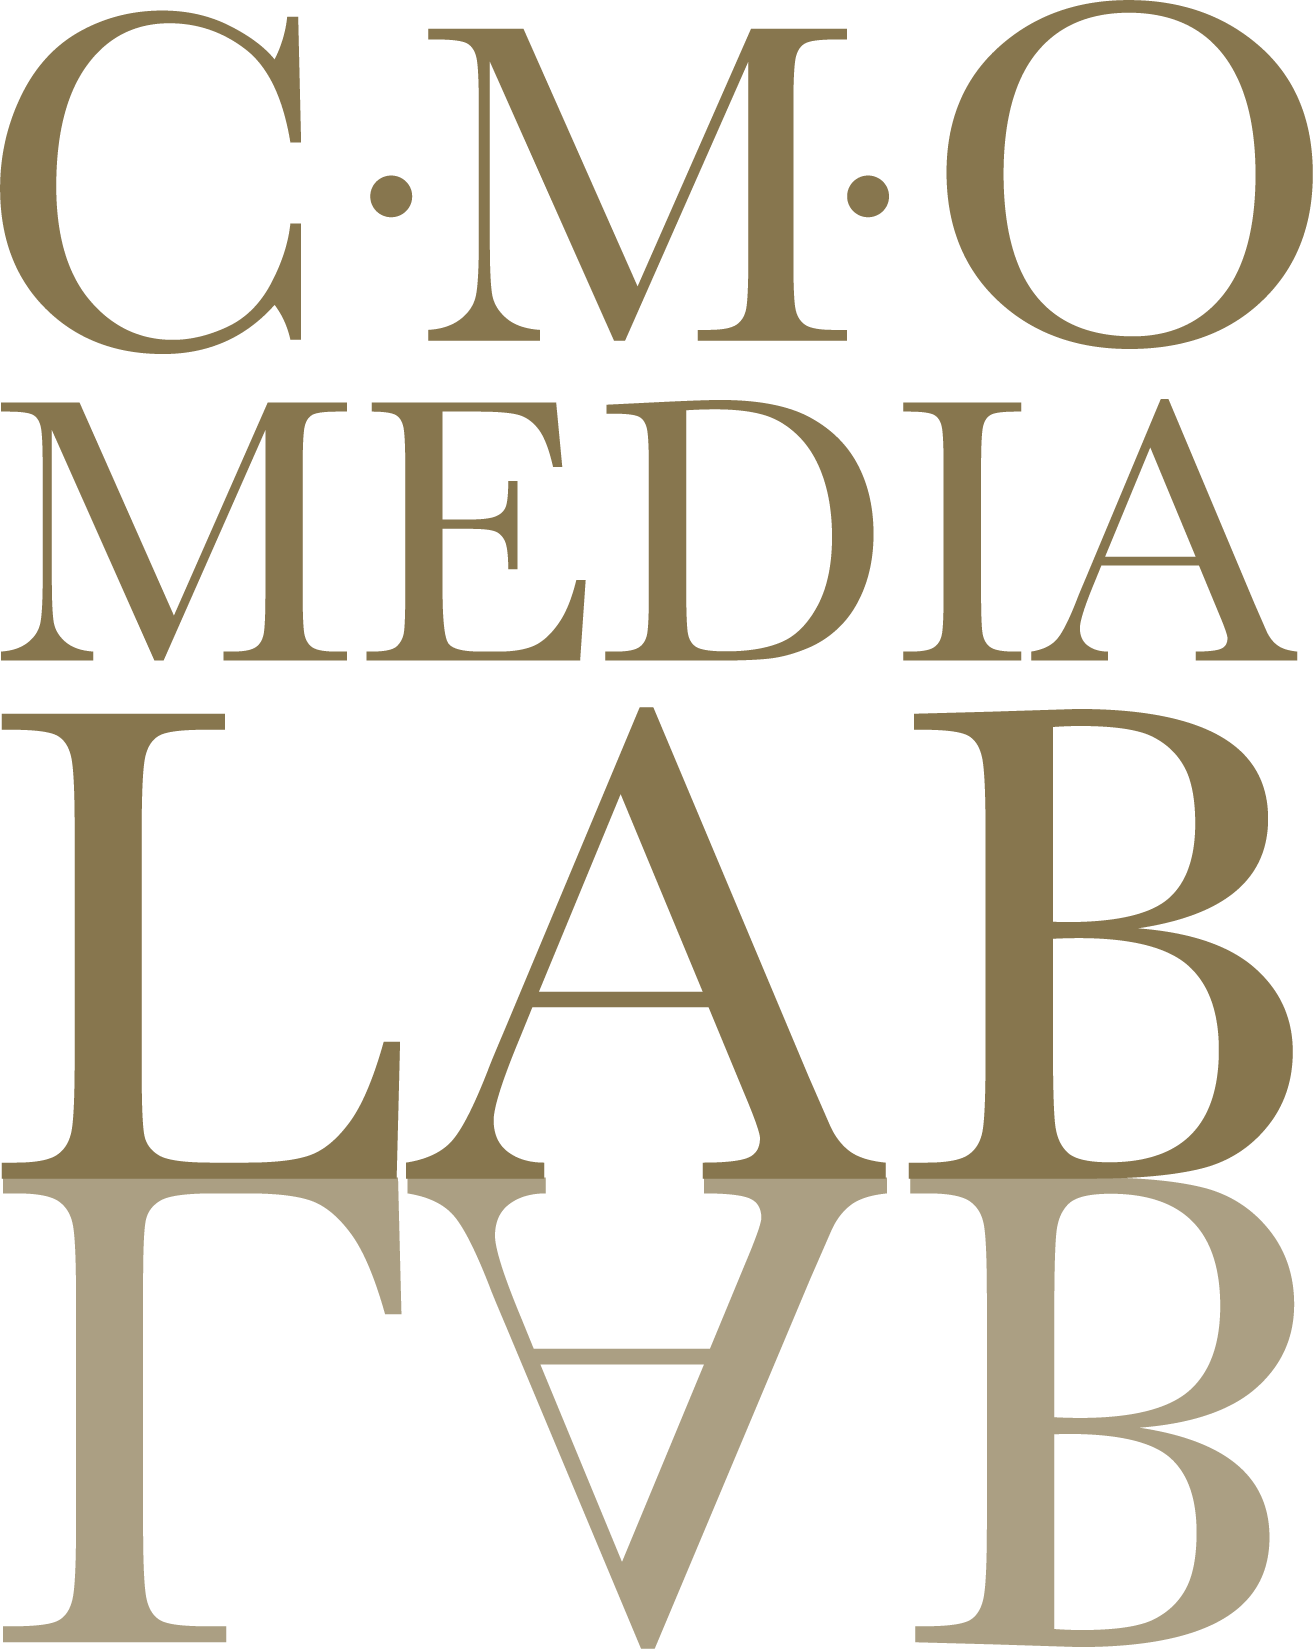 cmomedialab logo